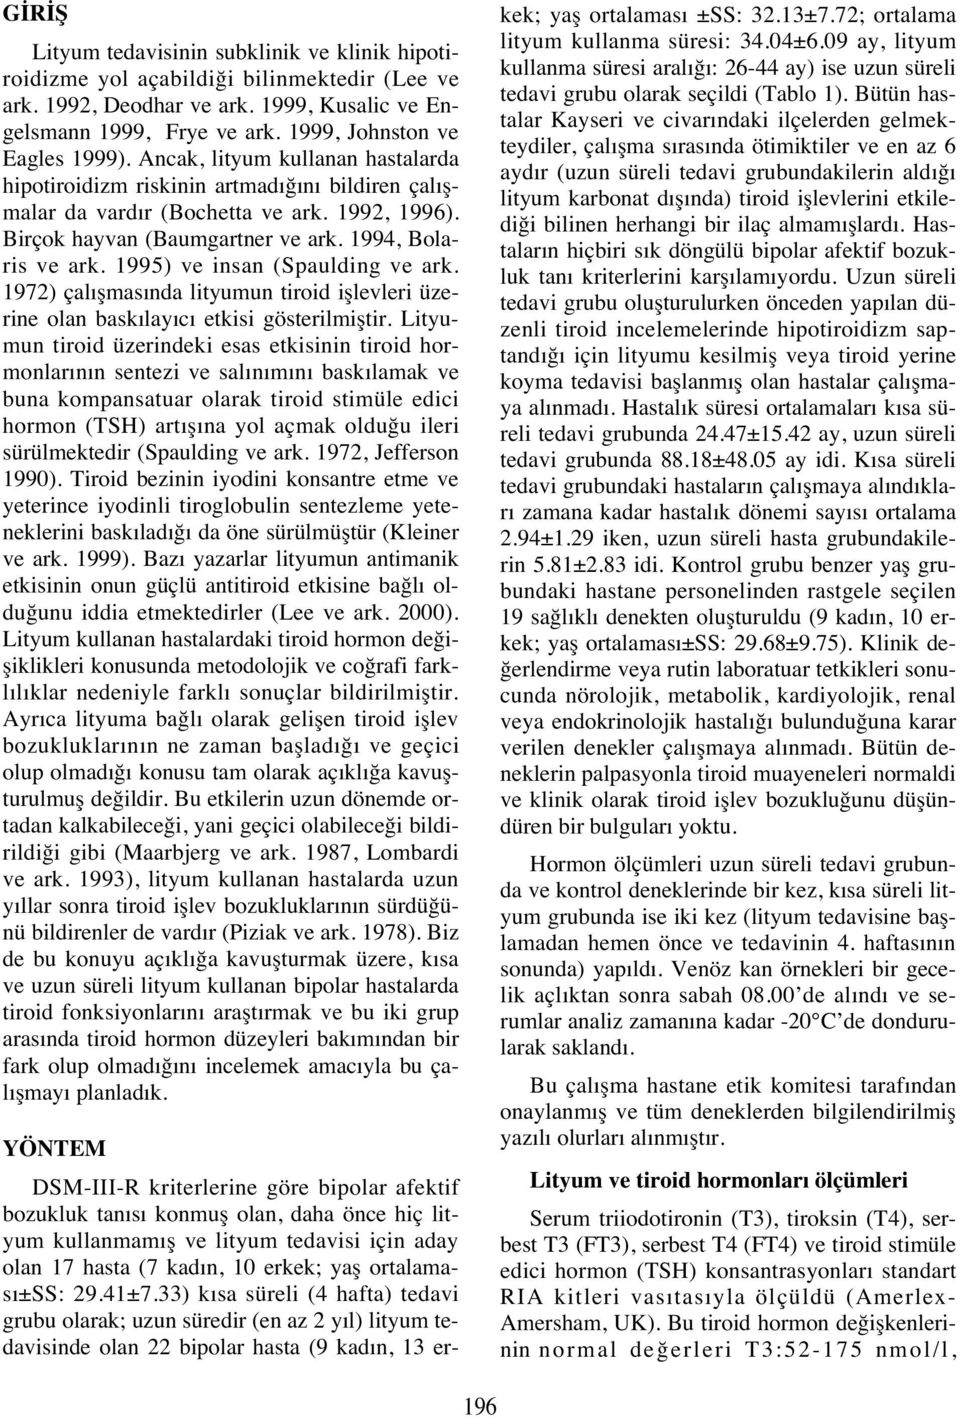 1994, Bolaris ve ark. 1995) ve insan (Spaulding ve ark. 1972) çal şmas nda lityumun tiroid işlevleri üzerine olan bask lay c etkisi gösterilmiştir.